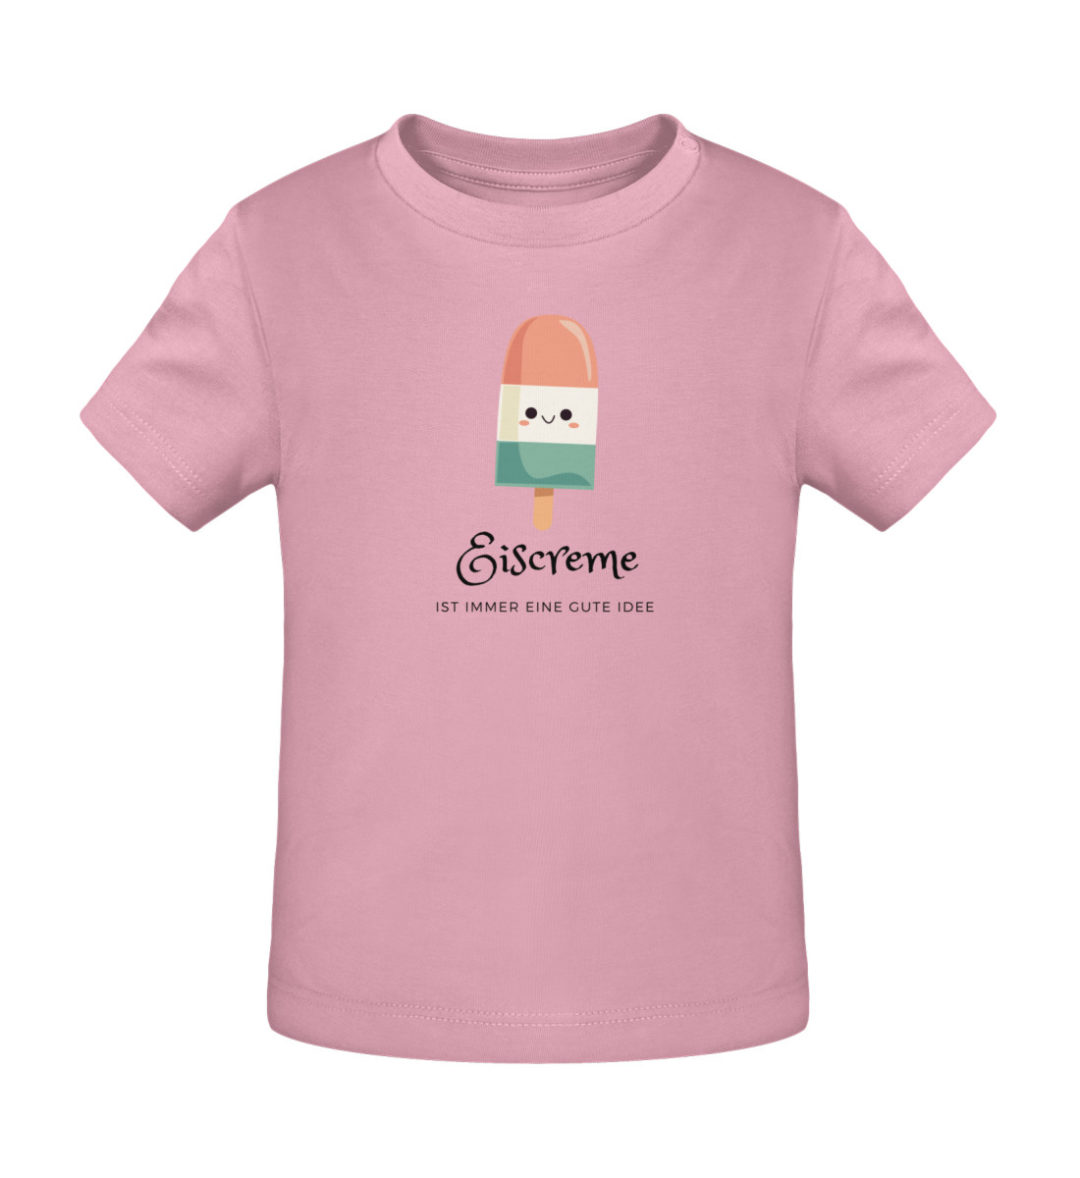 Eiscreme ist immer eine gute Idee - Baby Creator T-Shirt ST/ST-6883